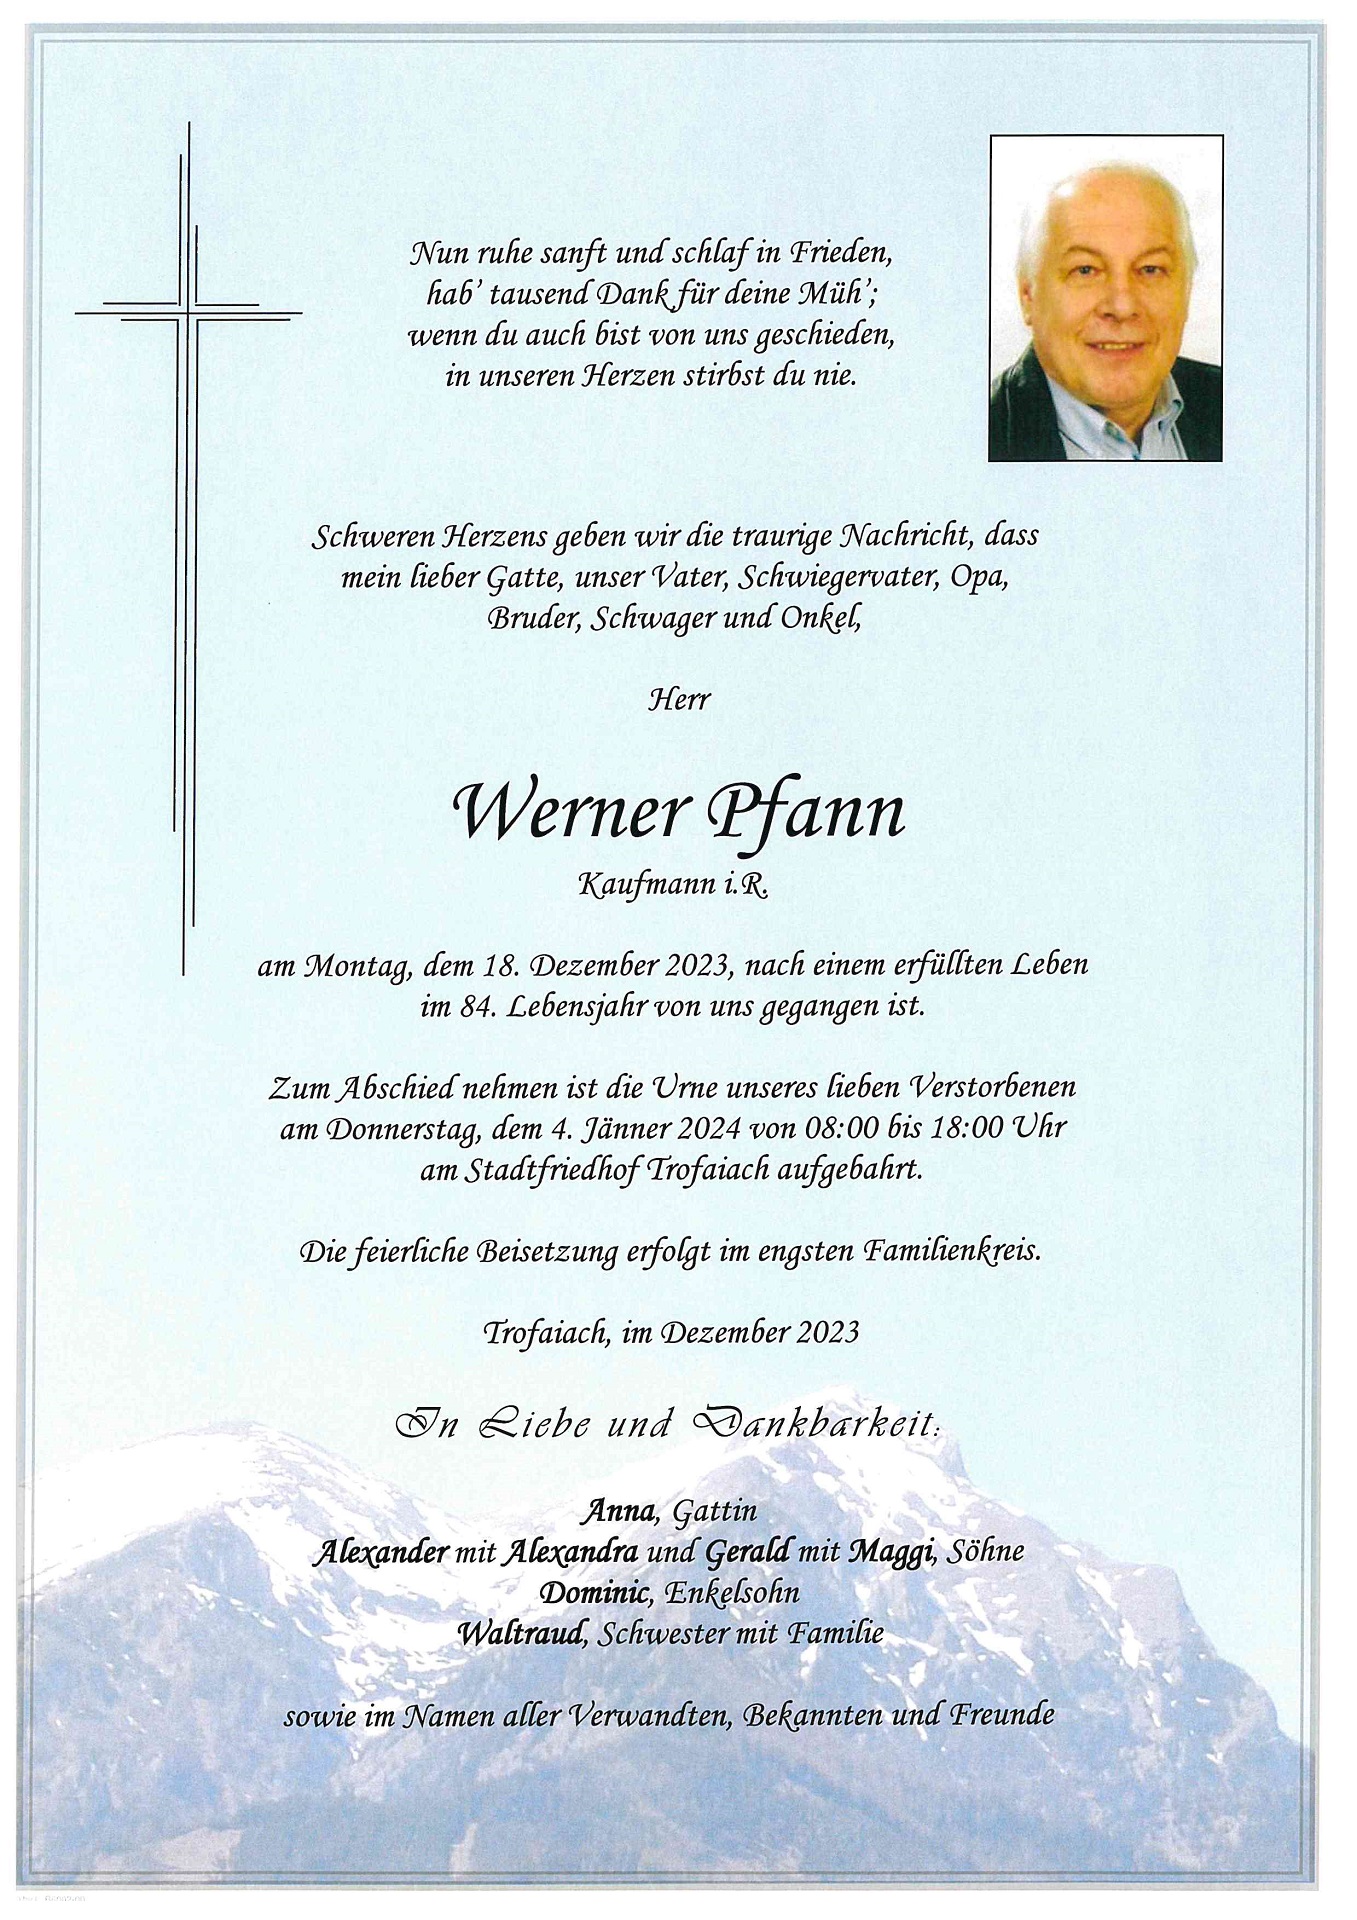 Pfann Werner